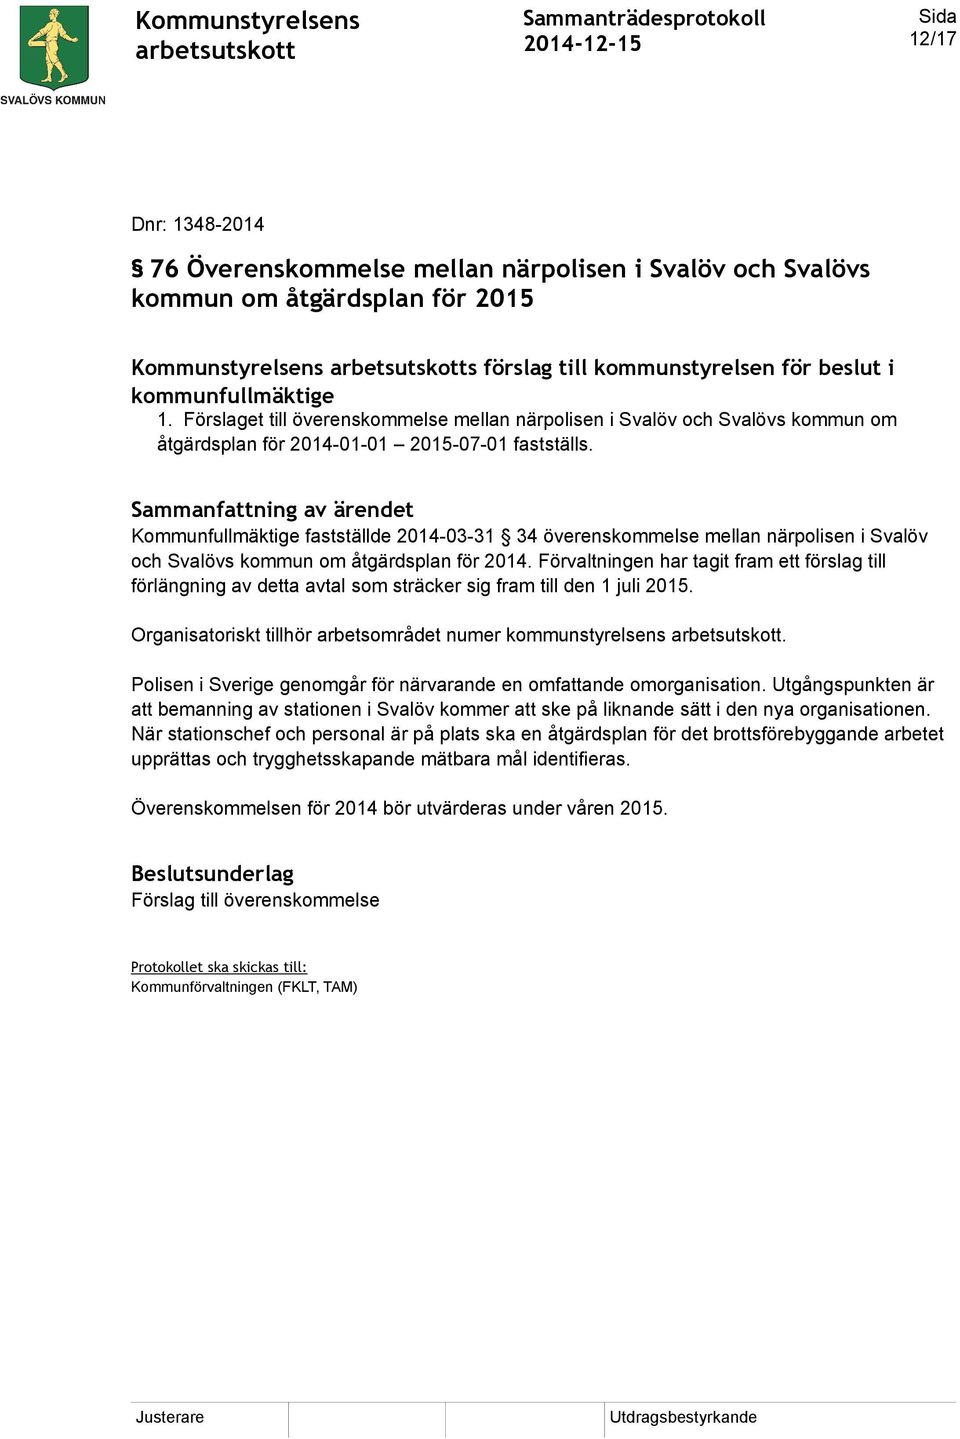 Kommunfullmäktige fastställde 2014-03-31 34 överenskommelse mellan närpolisen i Svalöv och Svalövs kommun om åtgärdsplan för 2014.